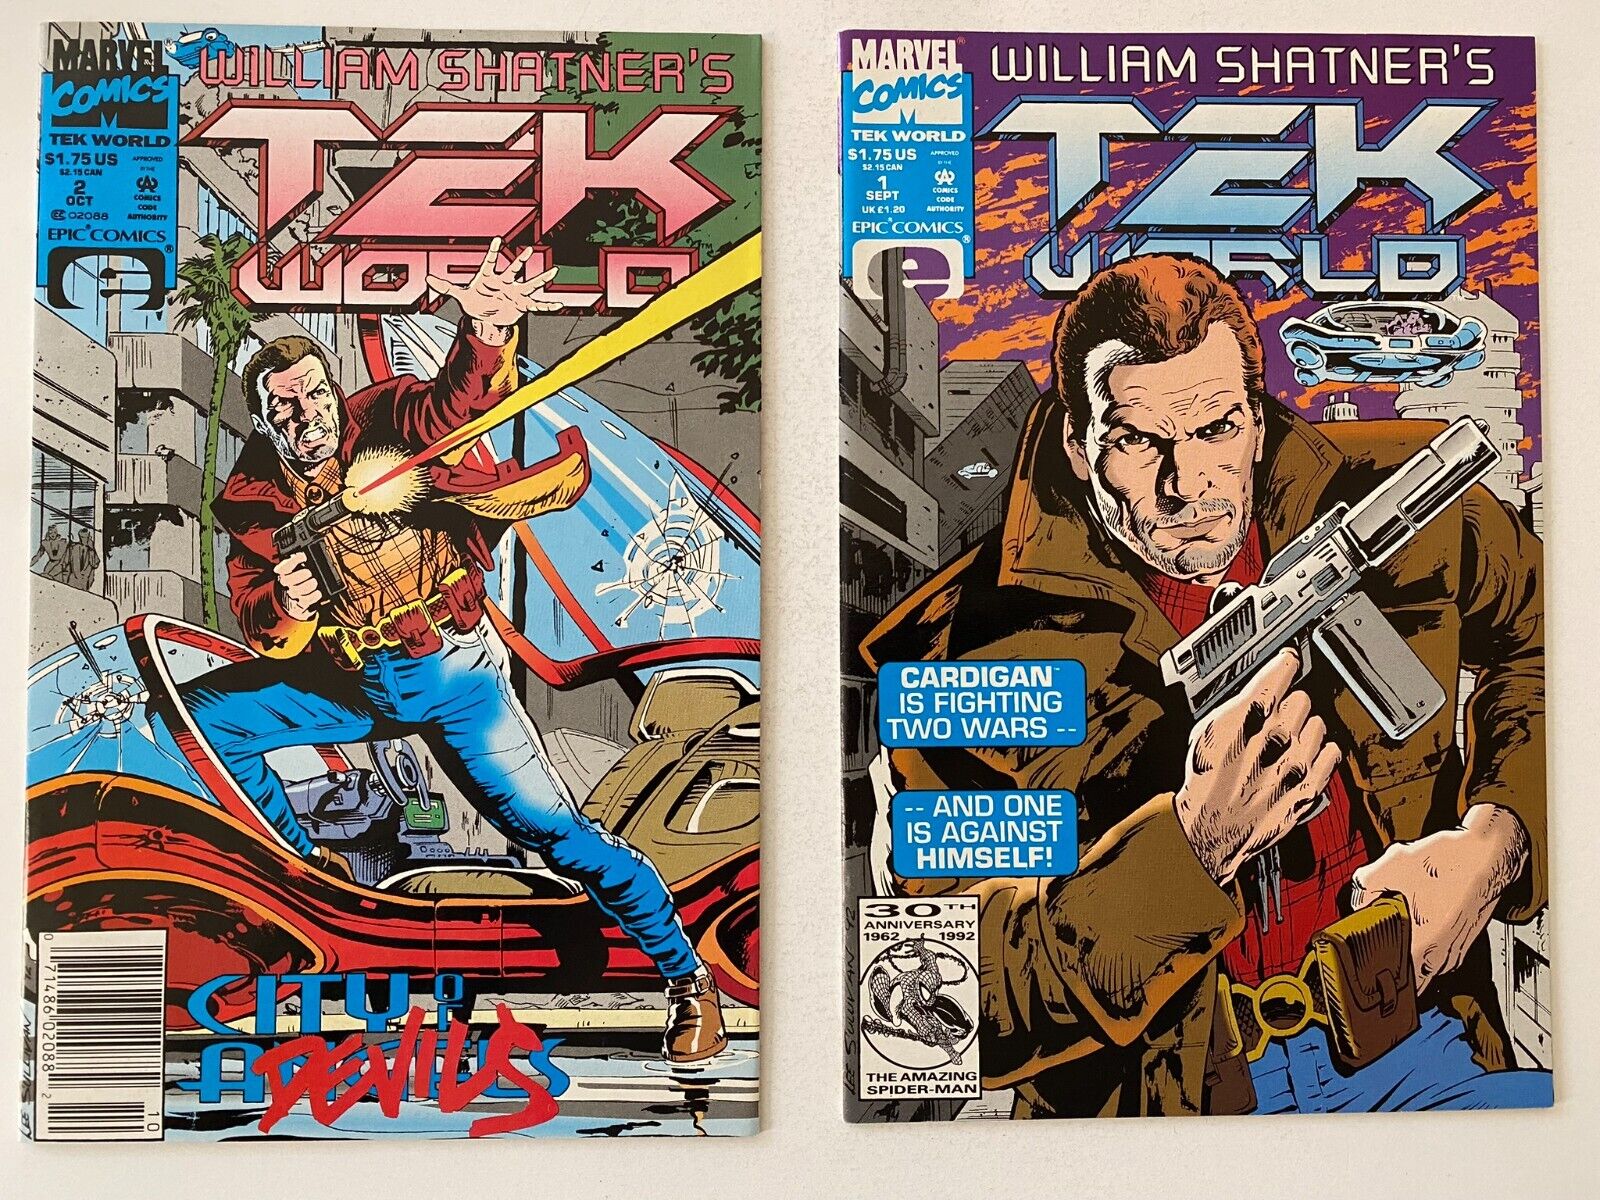 William Shatner's Tek World 1 2 Marvel Comics Epics Comics Lot